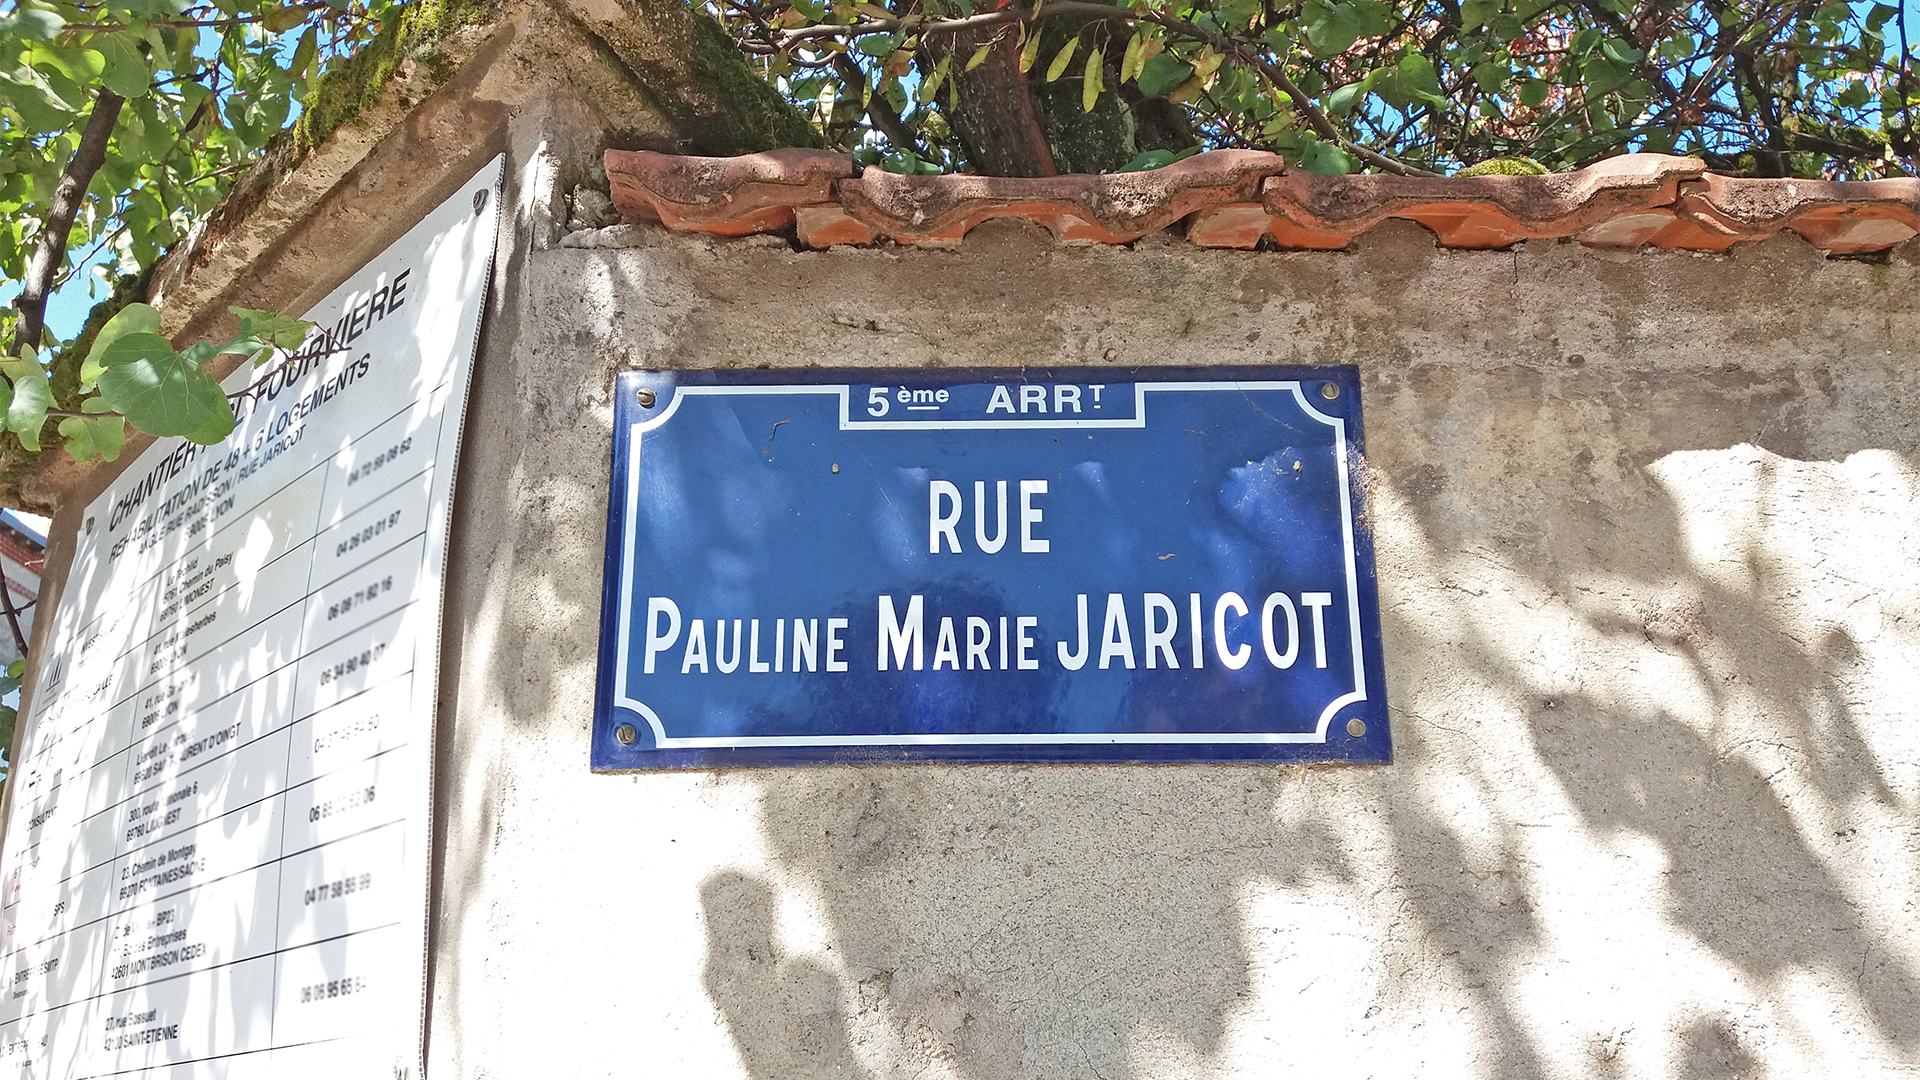 La Rue Pauline Jaricot, dans le 5ème arrondissement de Lyon | Wikimedia Commons – Romainbehar – CC0 1.0